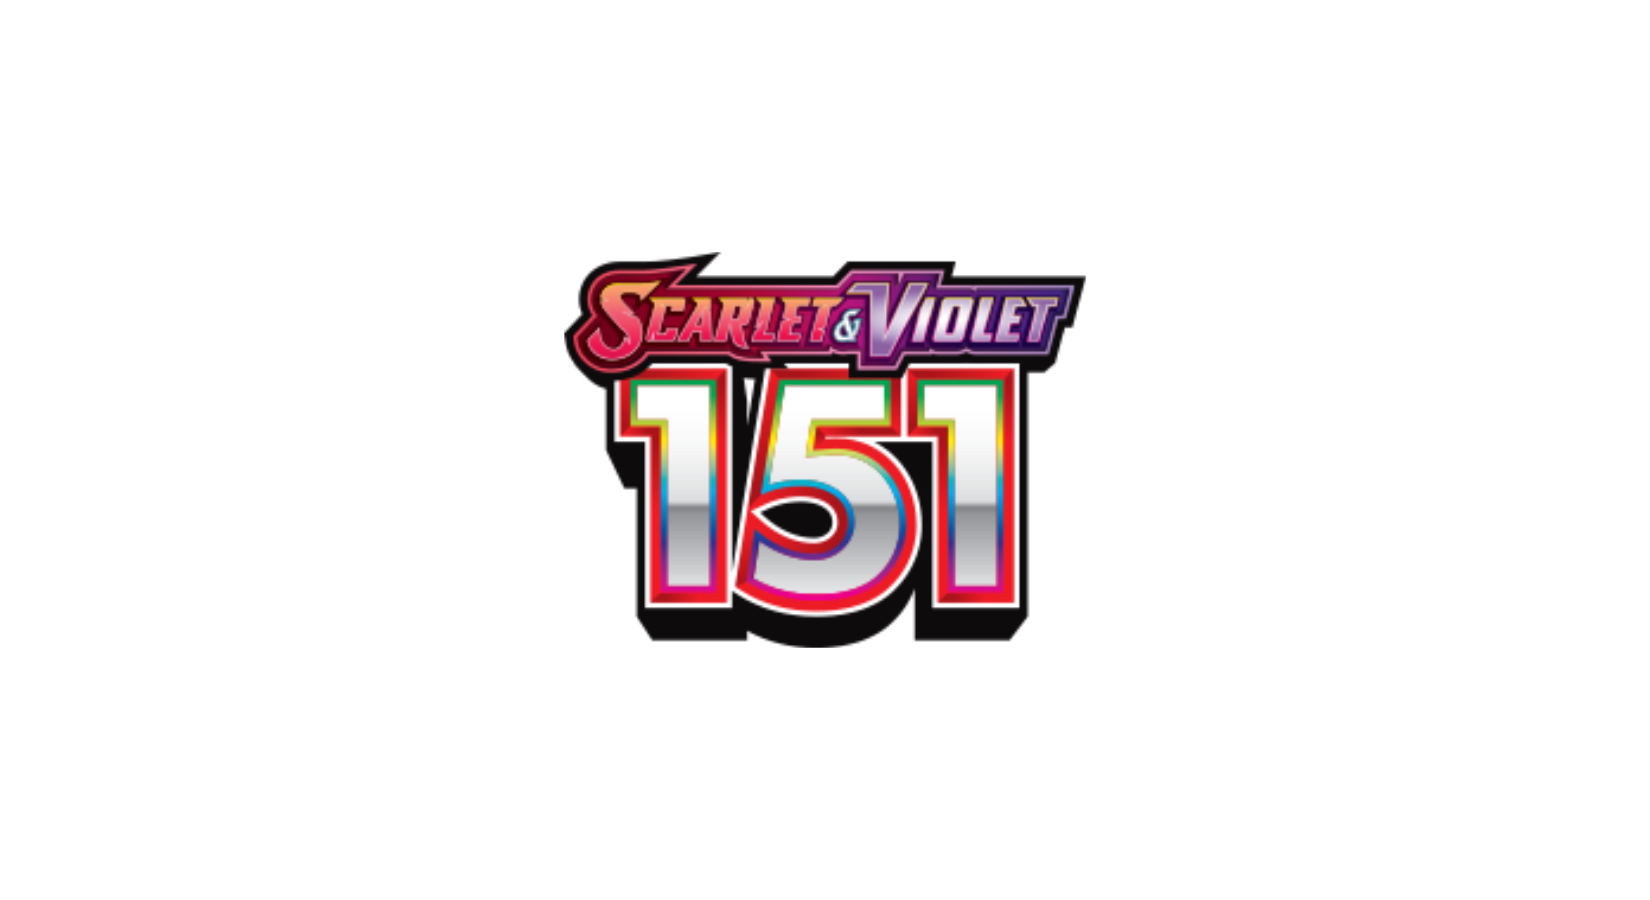 Alakazam ex - 188/165 - Scarlet & Violet 151 – Card Cavern Trading Cards,  LLC